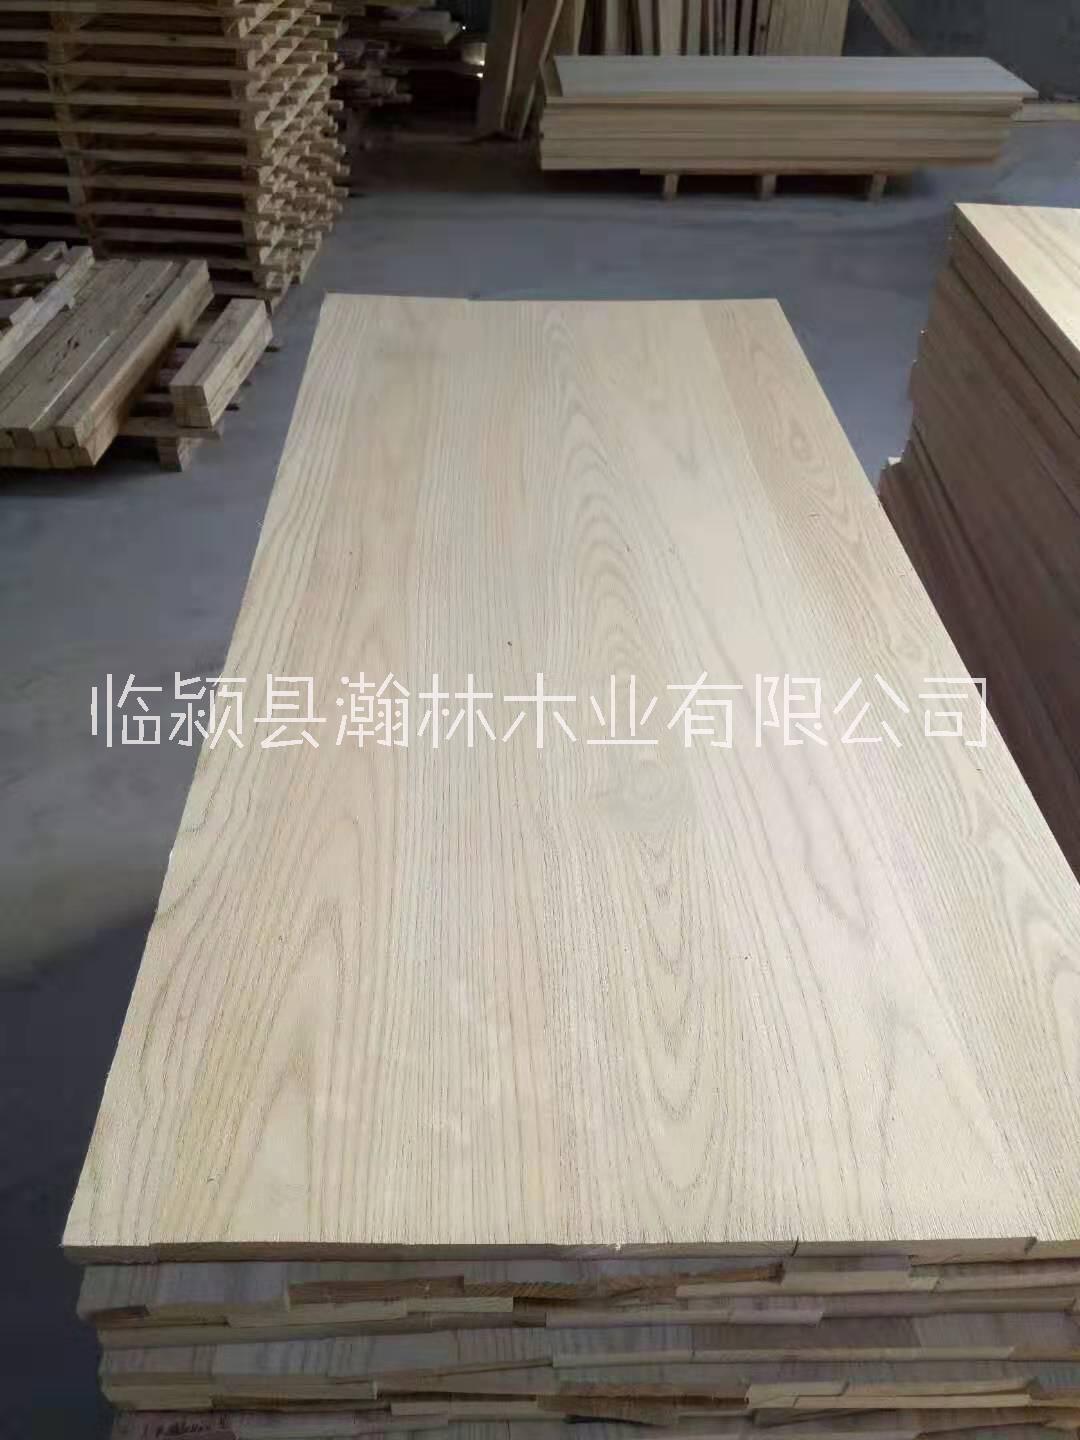 椿木拼板 河南本土板材厂家 专业来样加工木椿板材 生产实木椿木烘干家具材料